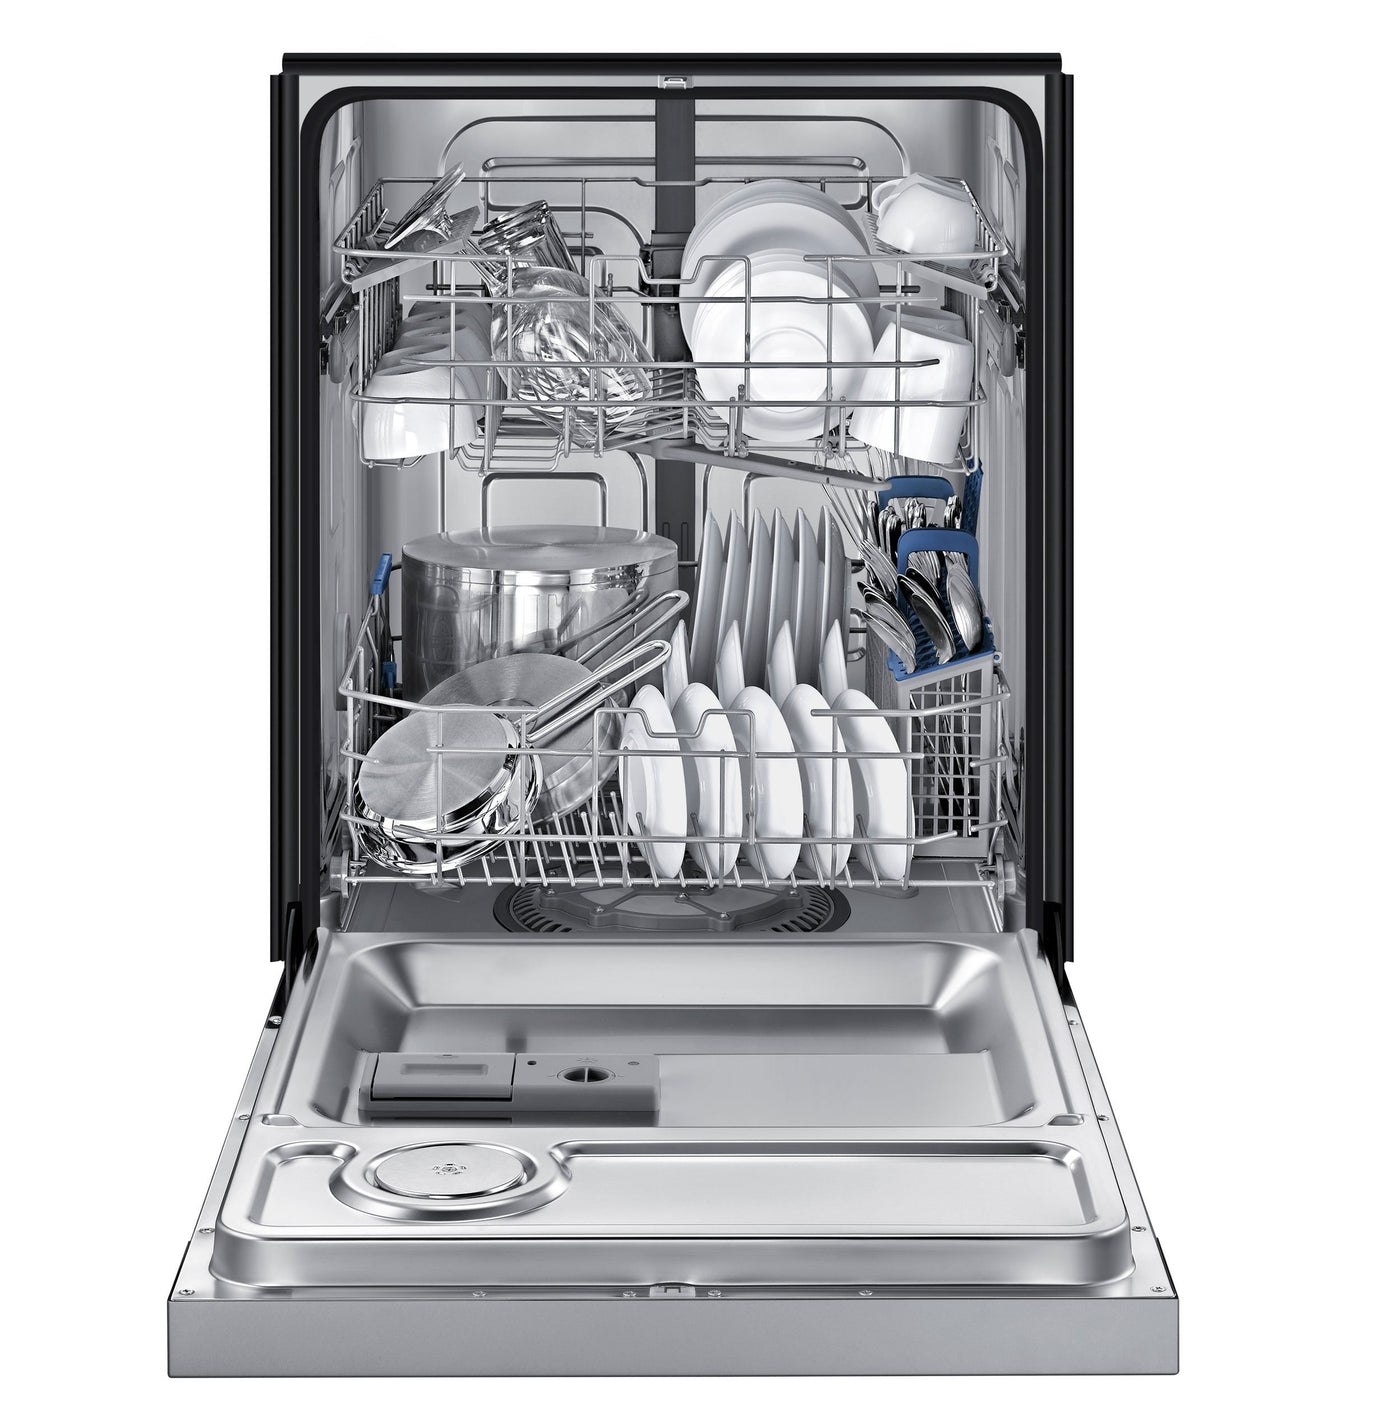 Встраиваемые посудомоечные машины samsung. Посудомоечная машина Samsung dw50r4040bb. Посудомоечная машина Samsung dw50r4050fs. Посудомоечная машина Platinum dw139e. Посудомоечная машина Avalon-dw32t инокс.